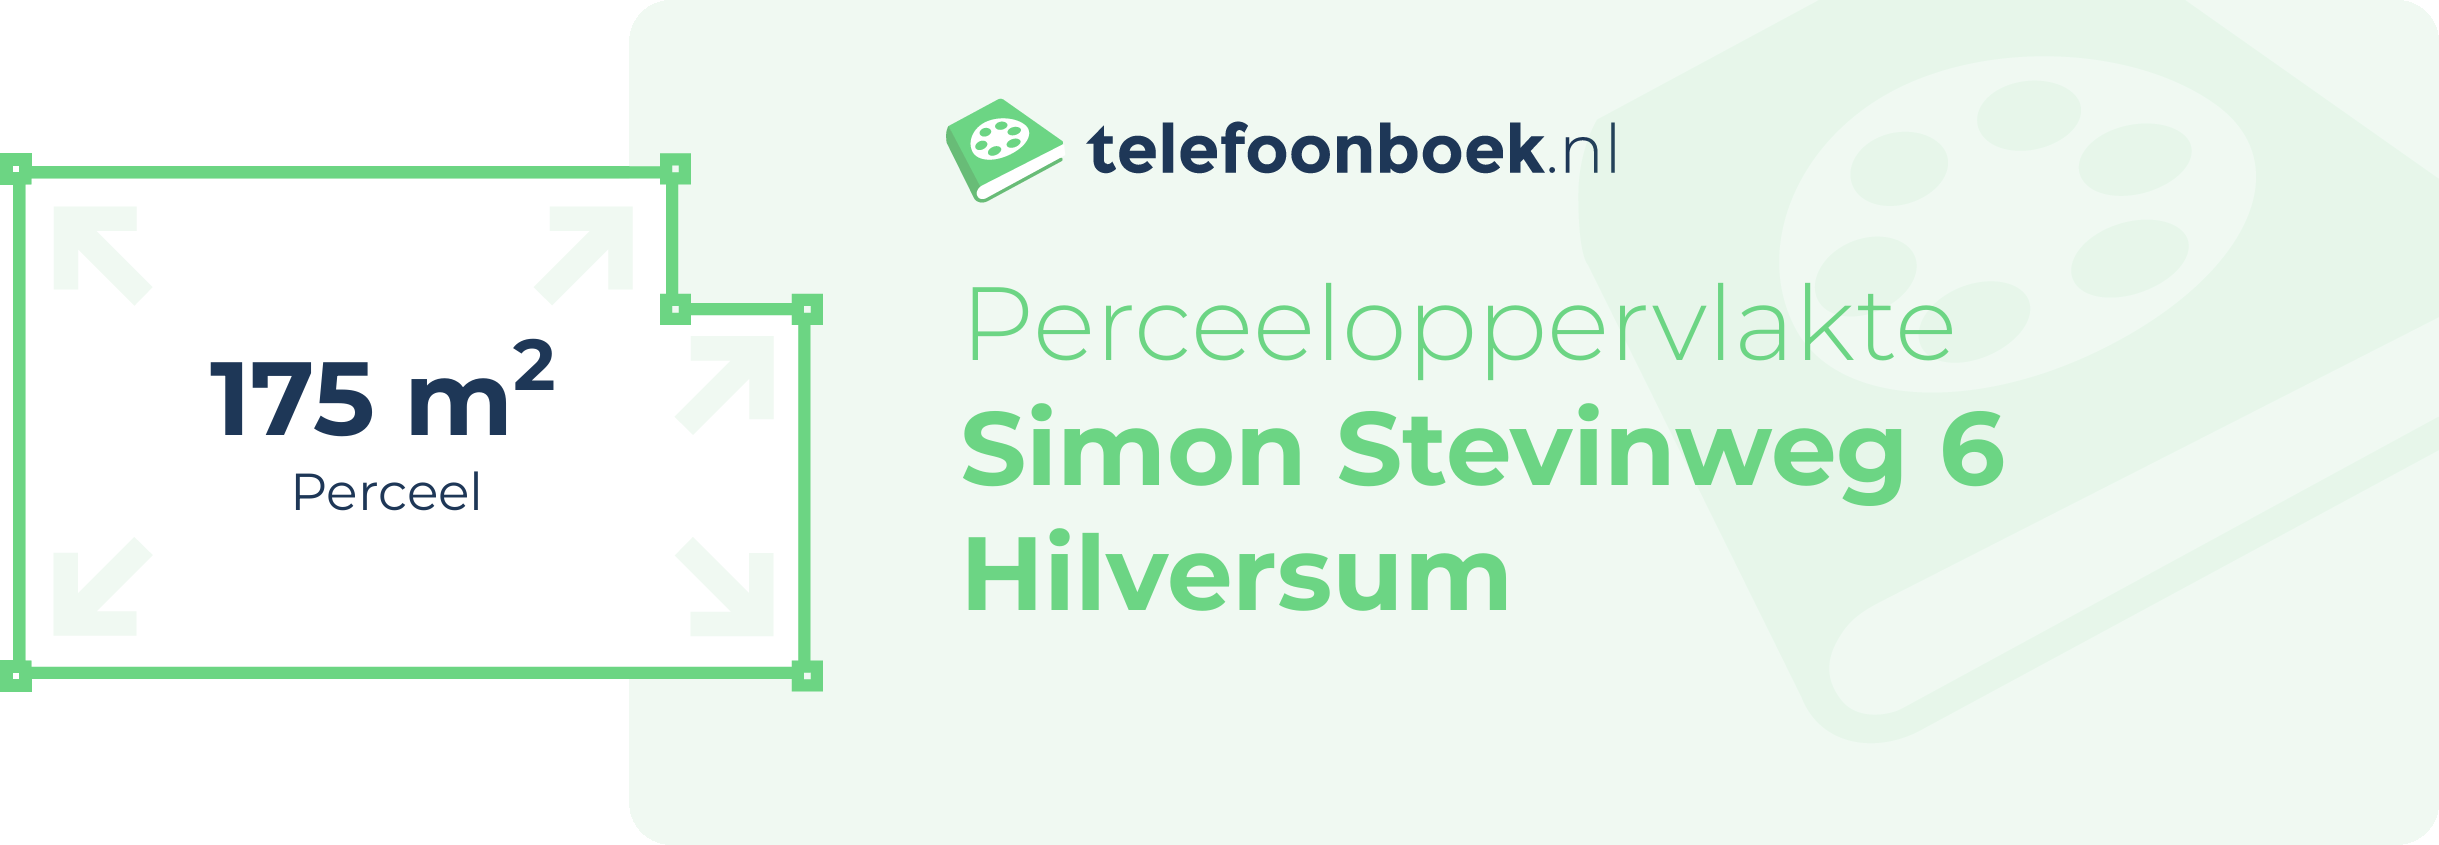 Perceeloppervlakte Simon Stevinweg 6 Hilversum